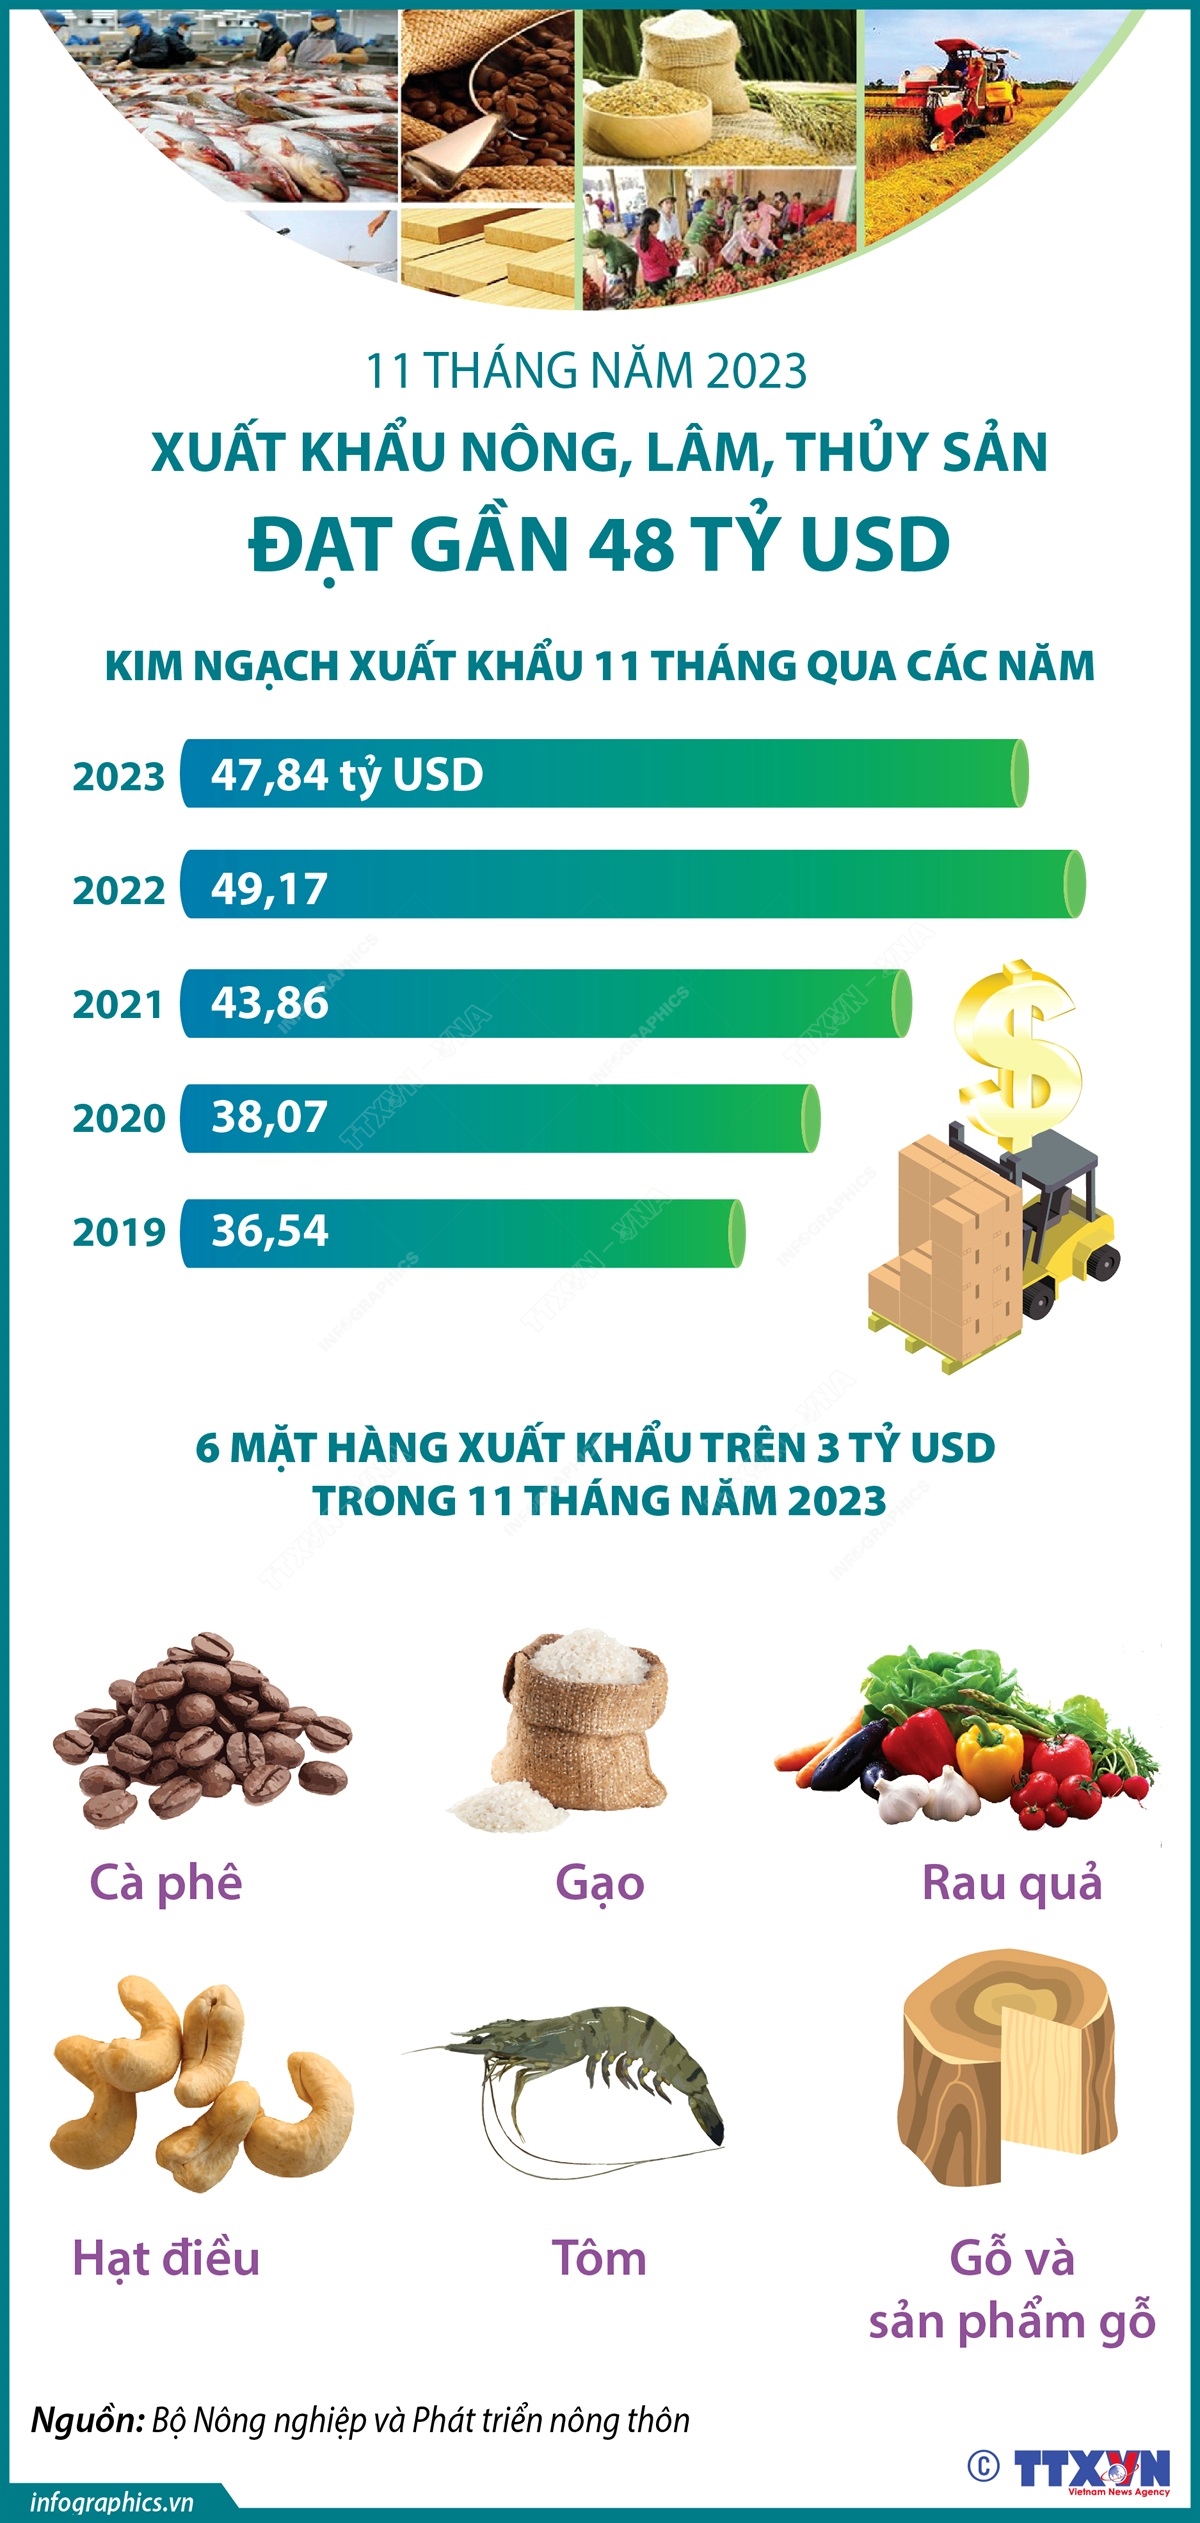 11 tháng năm 2023: Xuất khẩu nông, lâm, thủy sản đạt gần 48 tỷ USD - Ảnh 1.